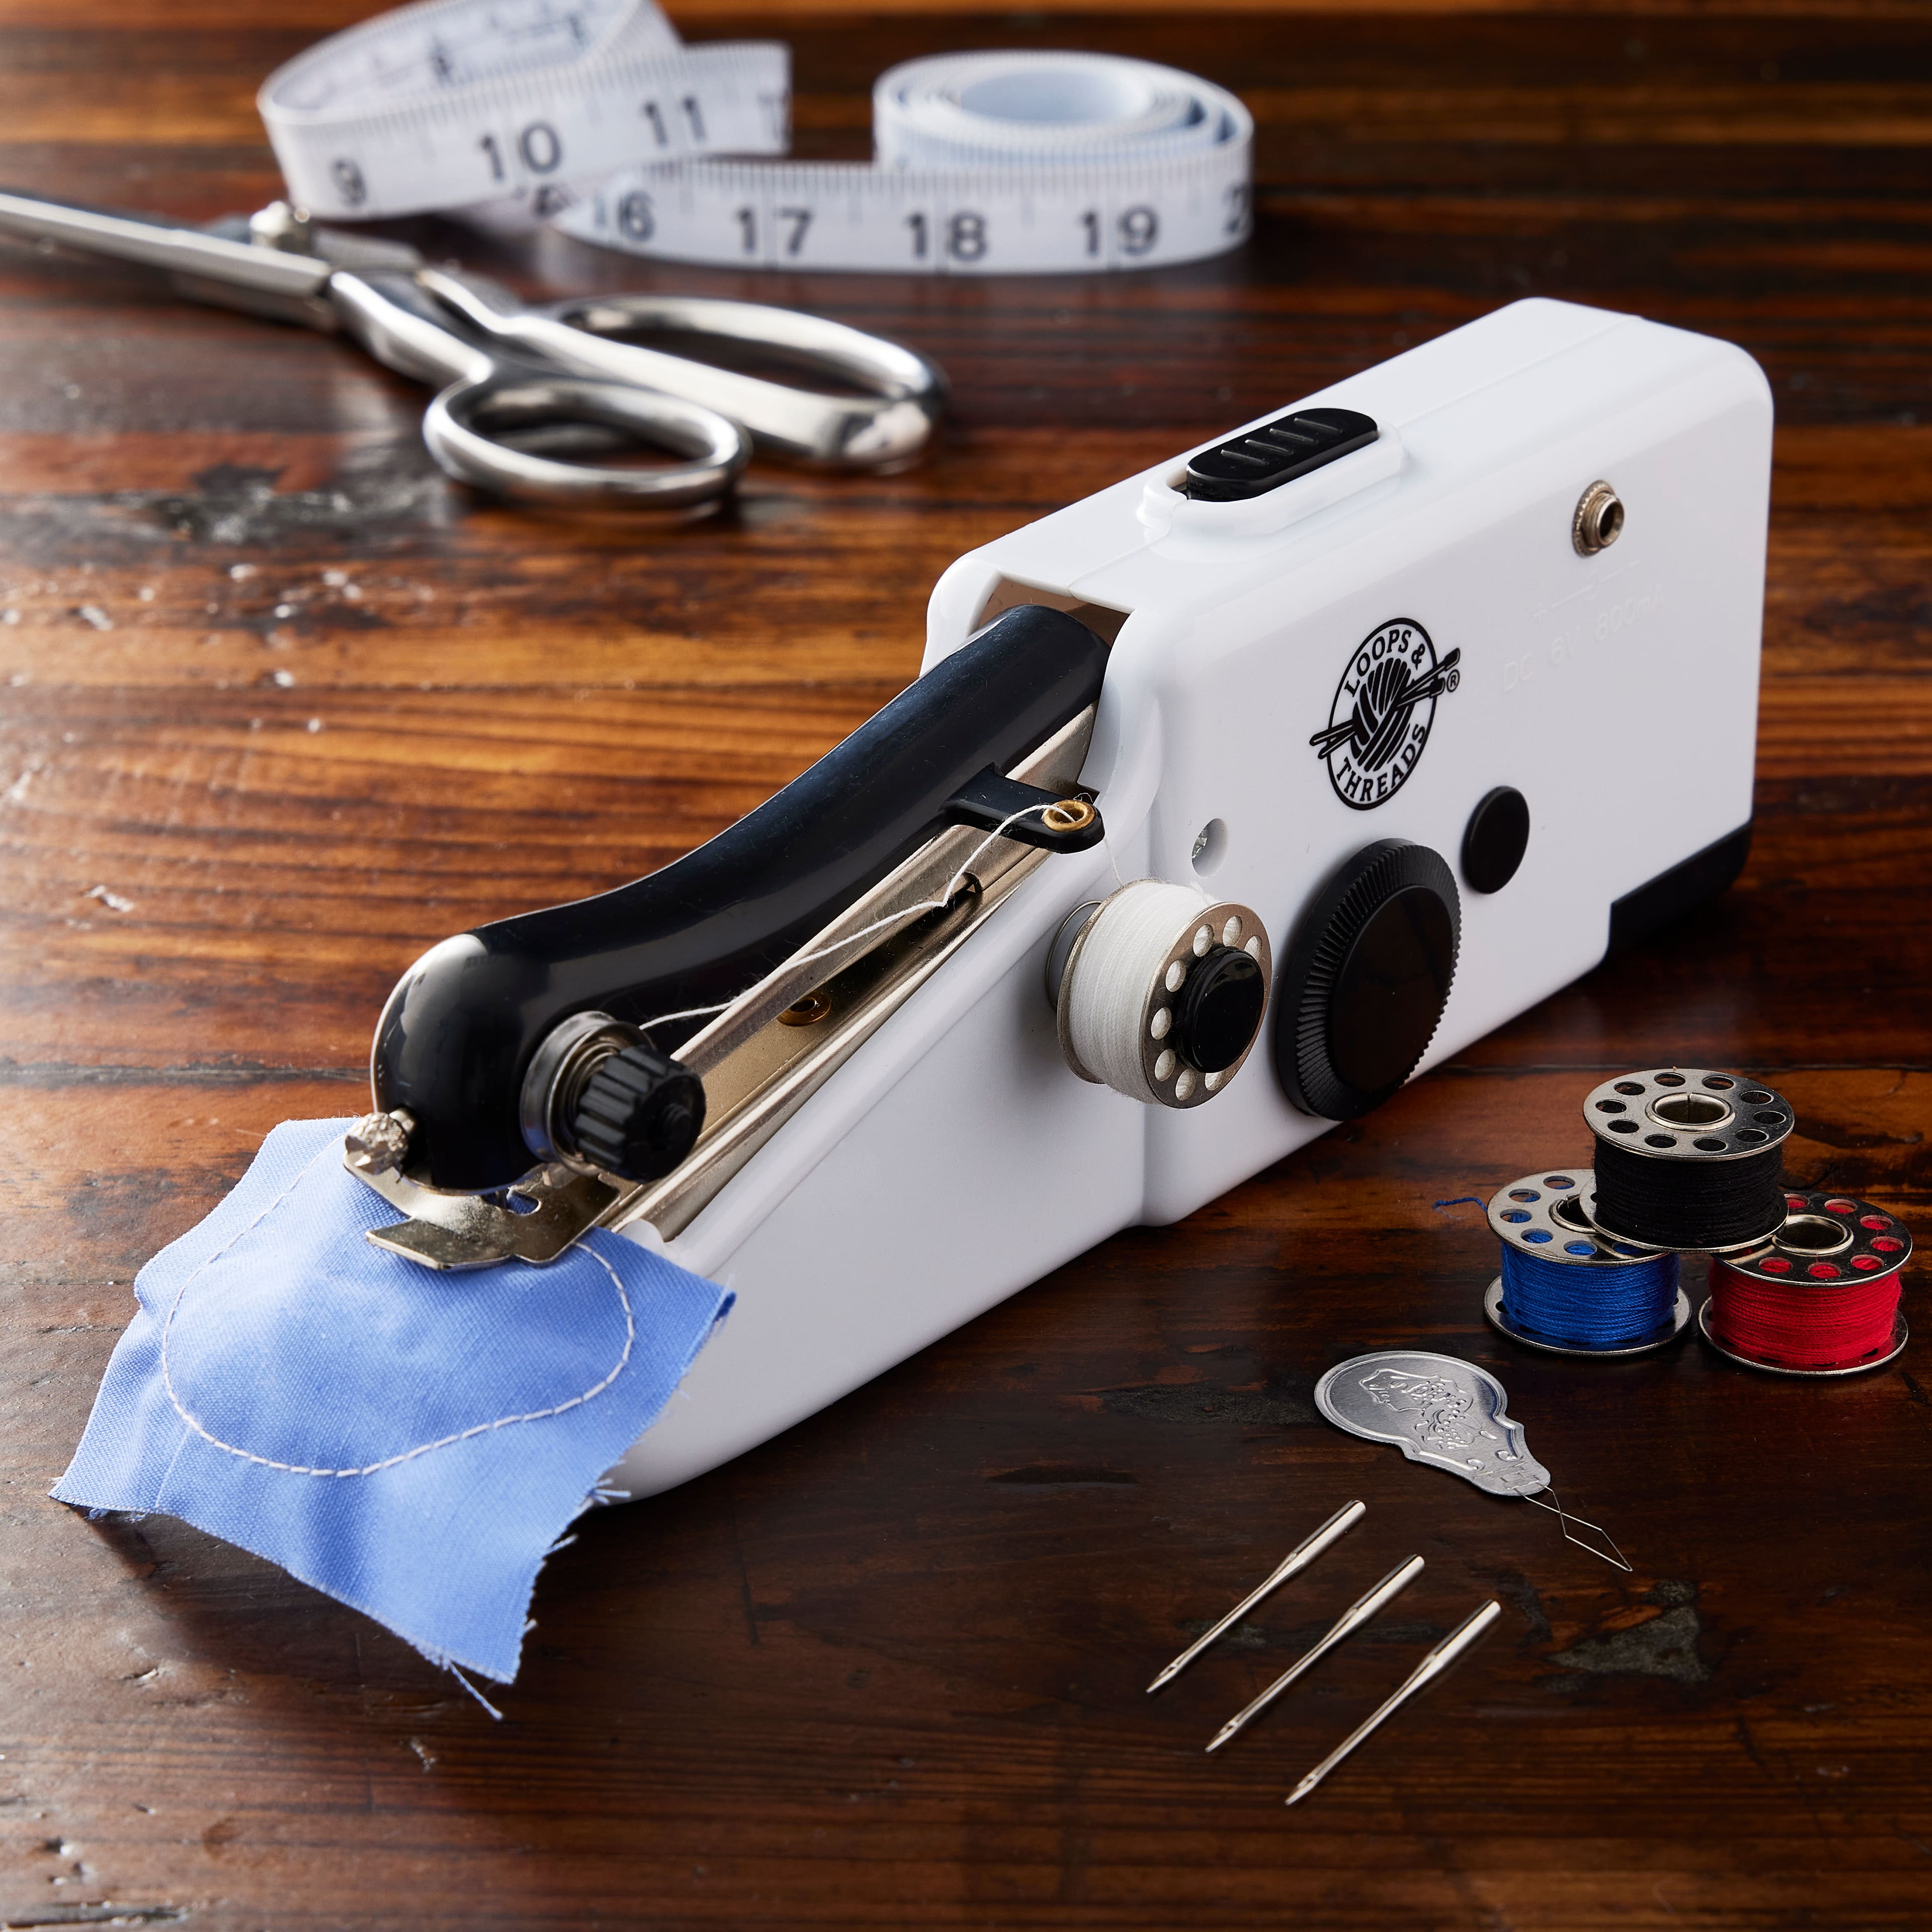 Hand sewing machine (type: RJW1222)